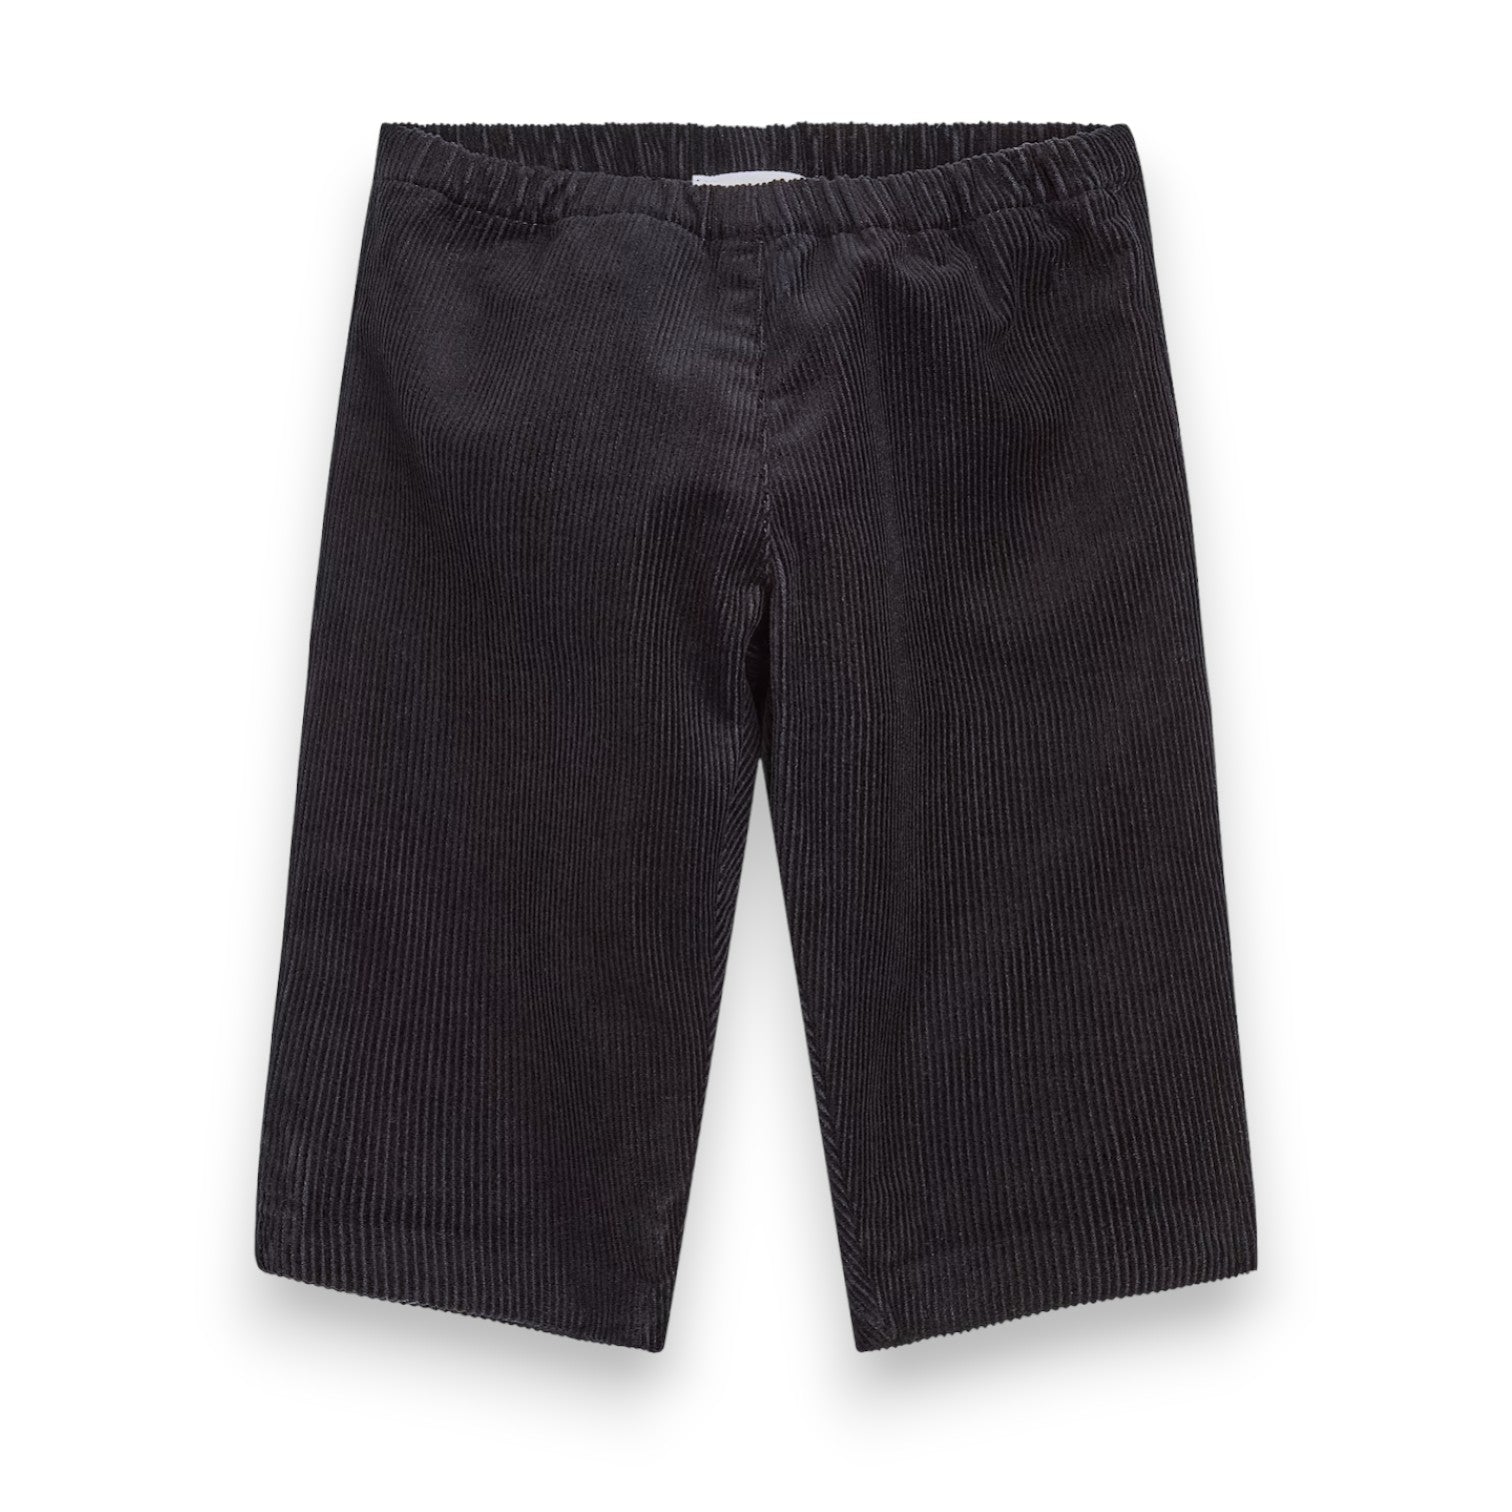 BONPOINT X KHAITE - Pantalon noir en velours (neuf) - 2 ans